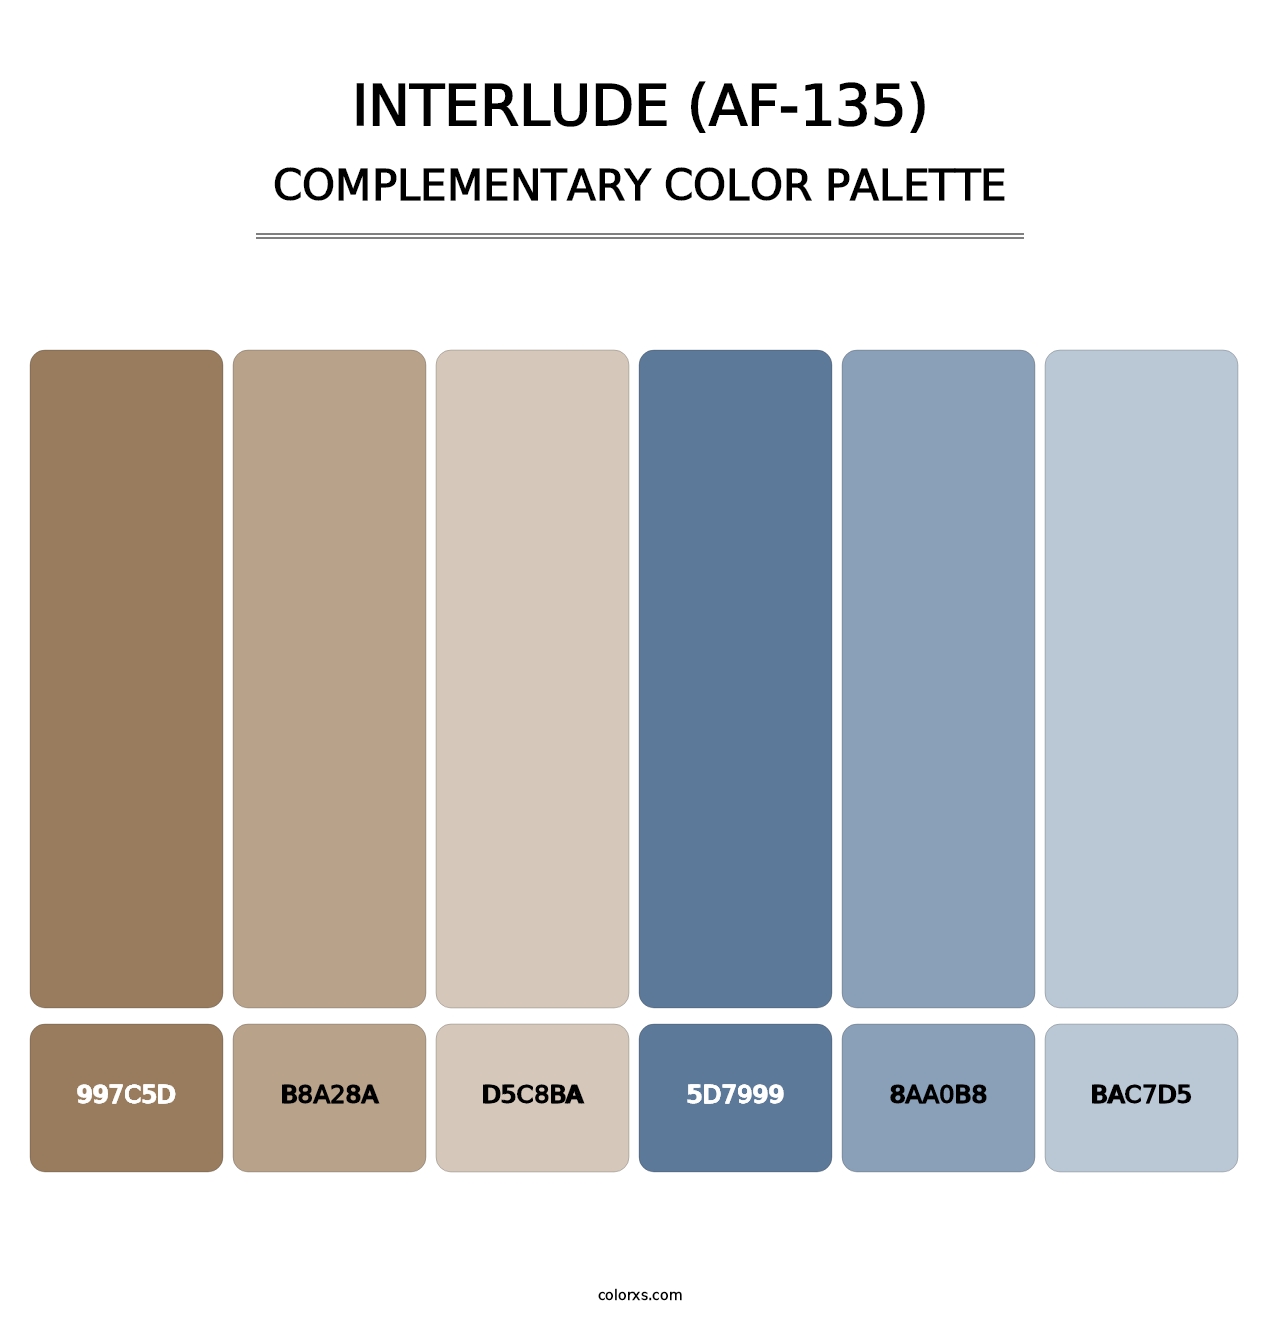 Interlude (AF-135) - Complementary Color Palette